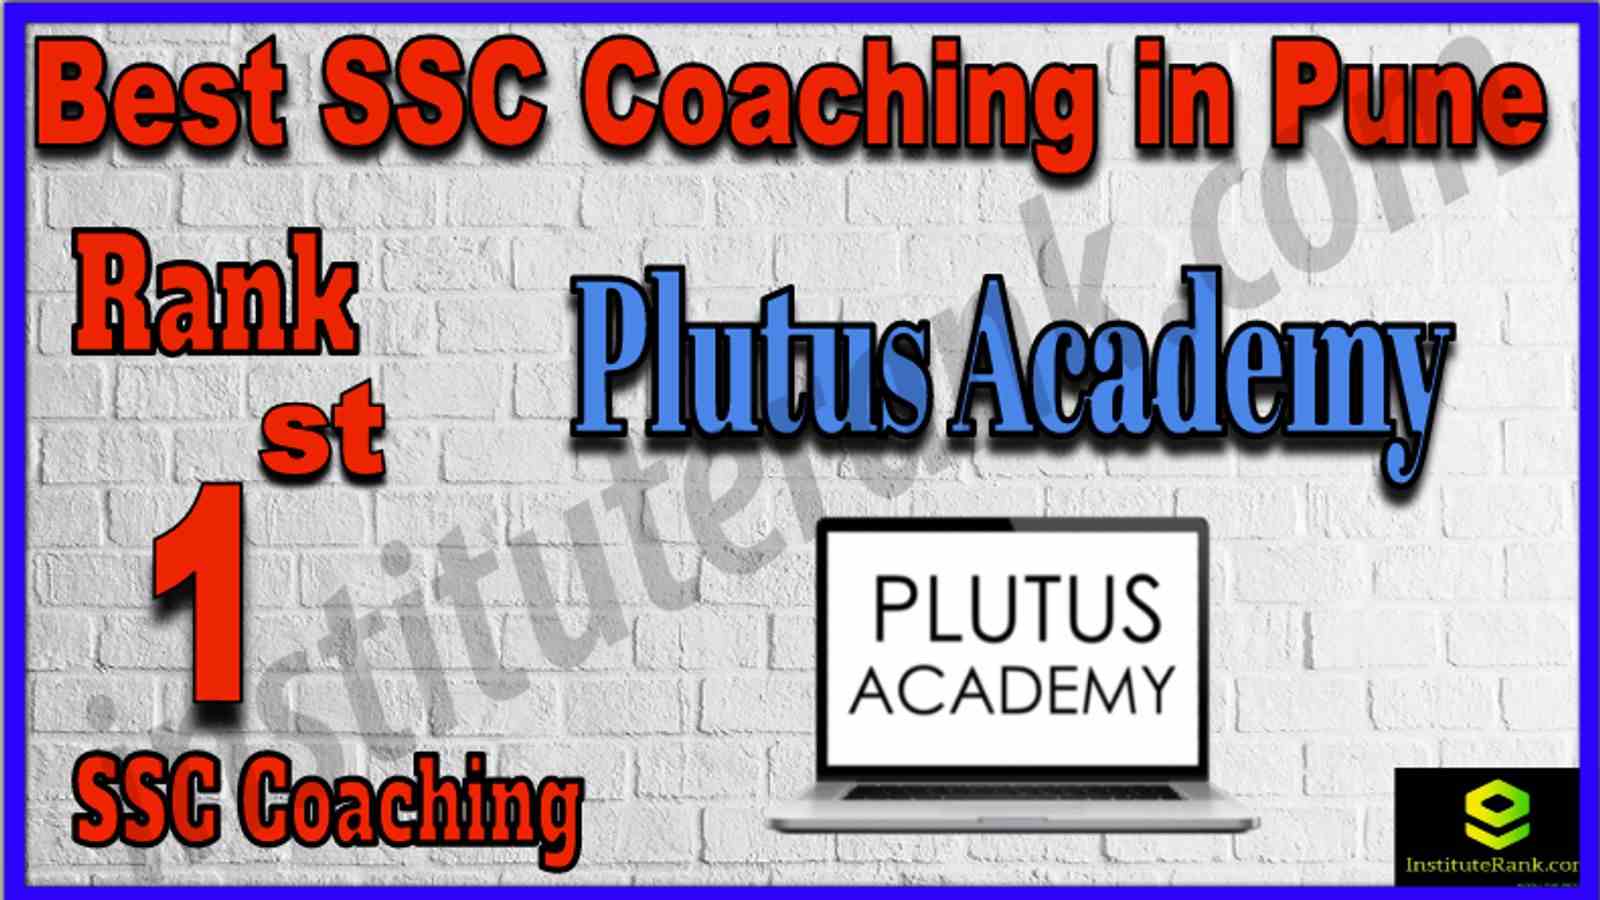 Rank 1st Best SSC Coaching in Pune